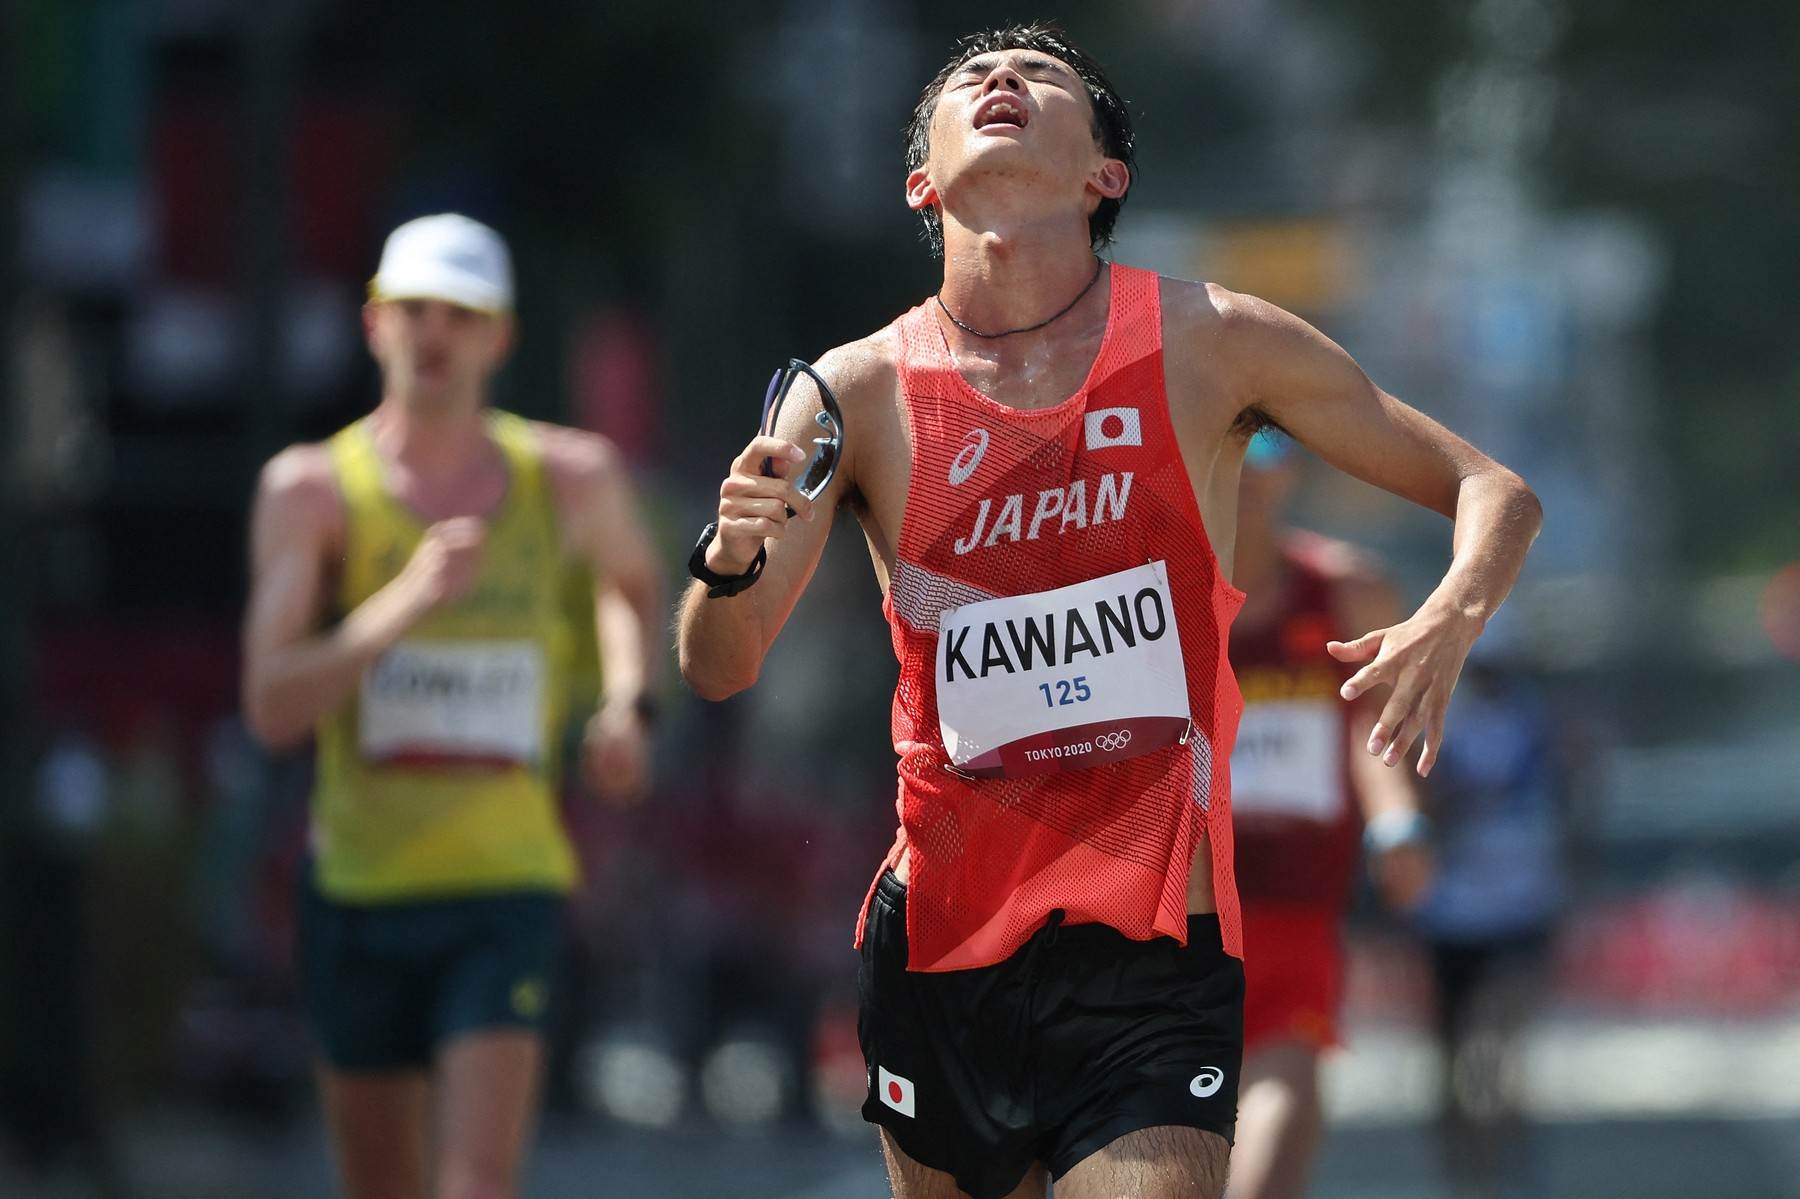  Japanski atletičar povraćao tokom trke i završio šesti na Olimpijskim igrama 